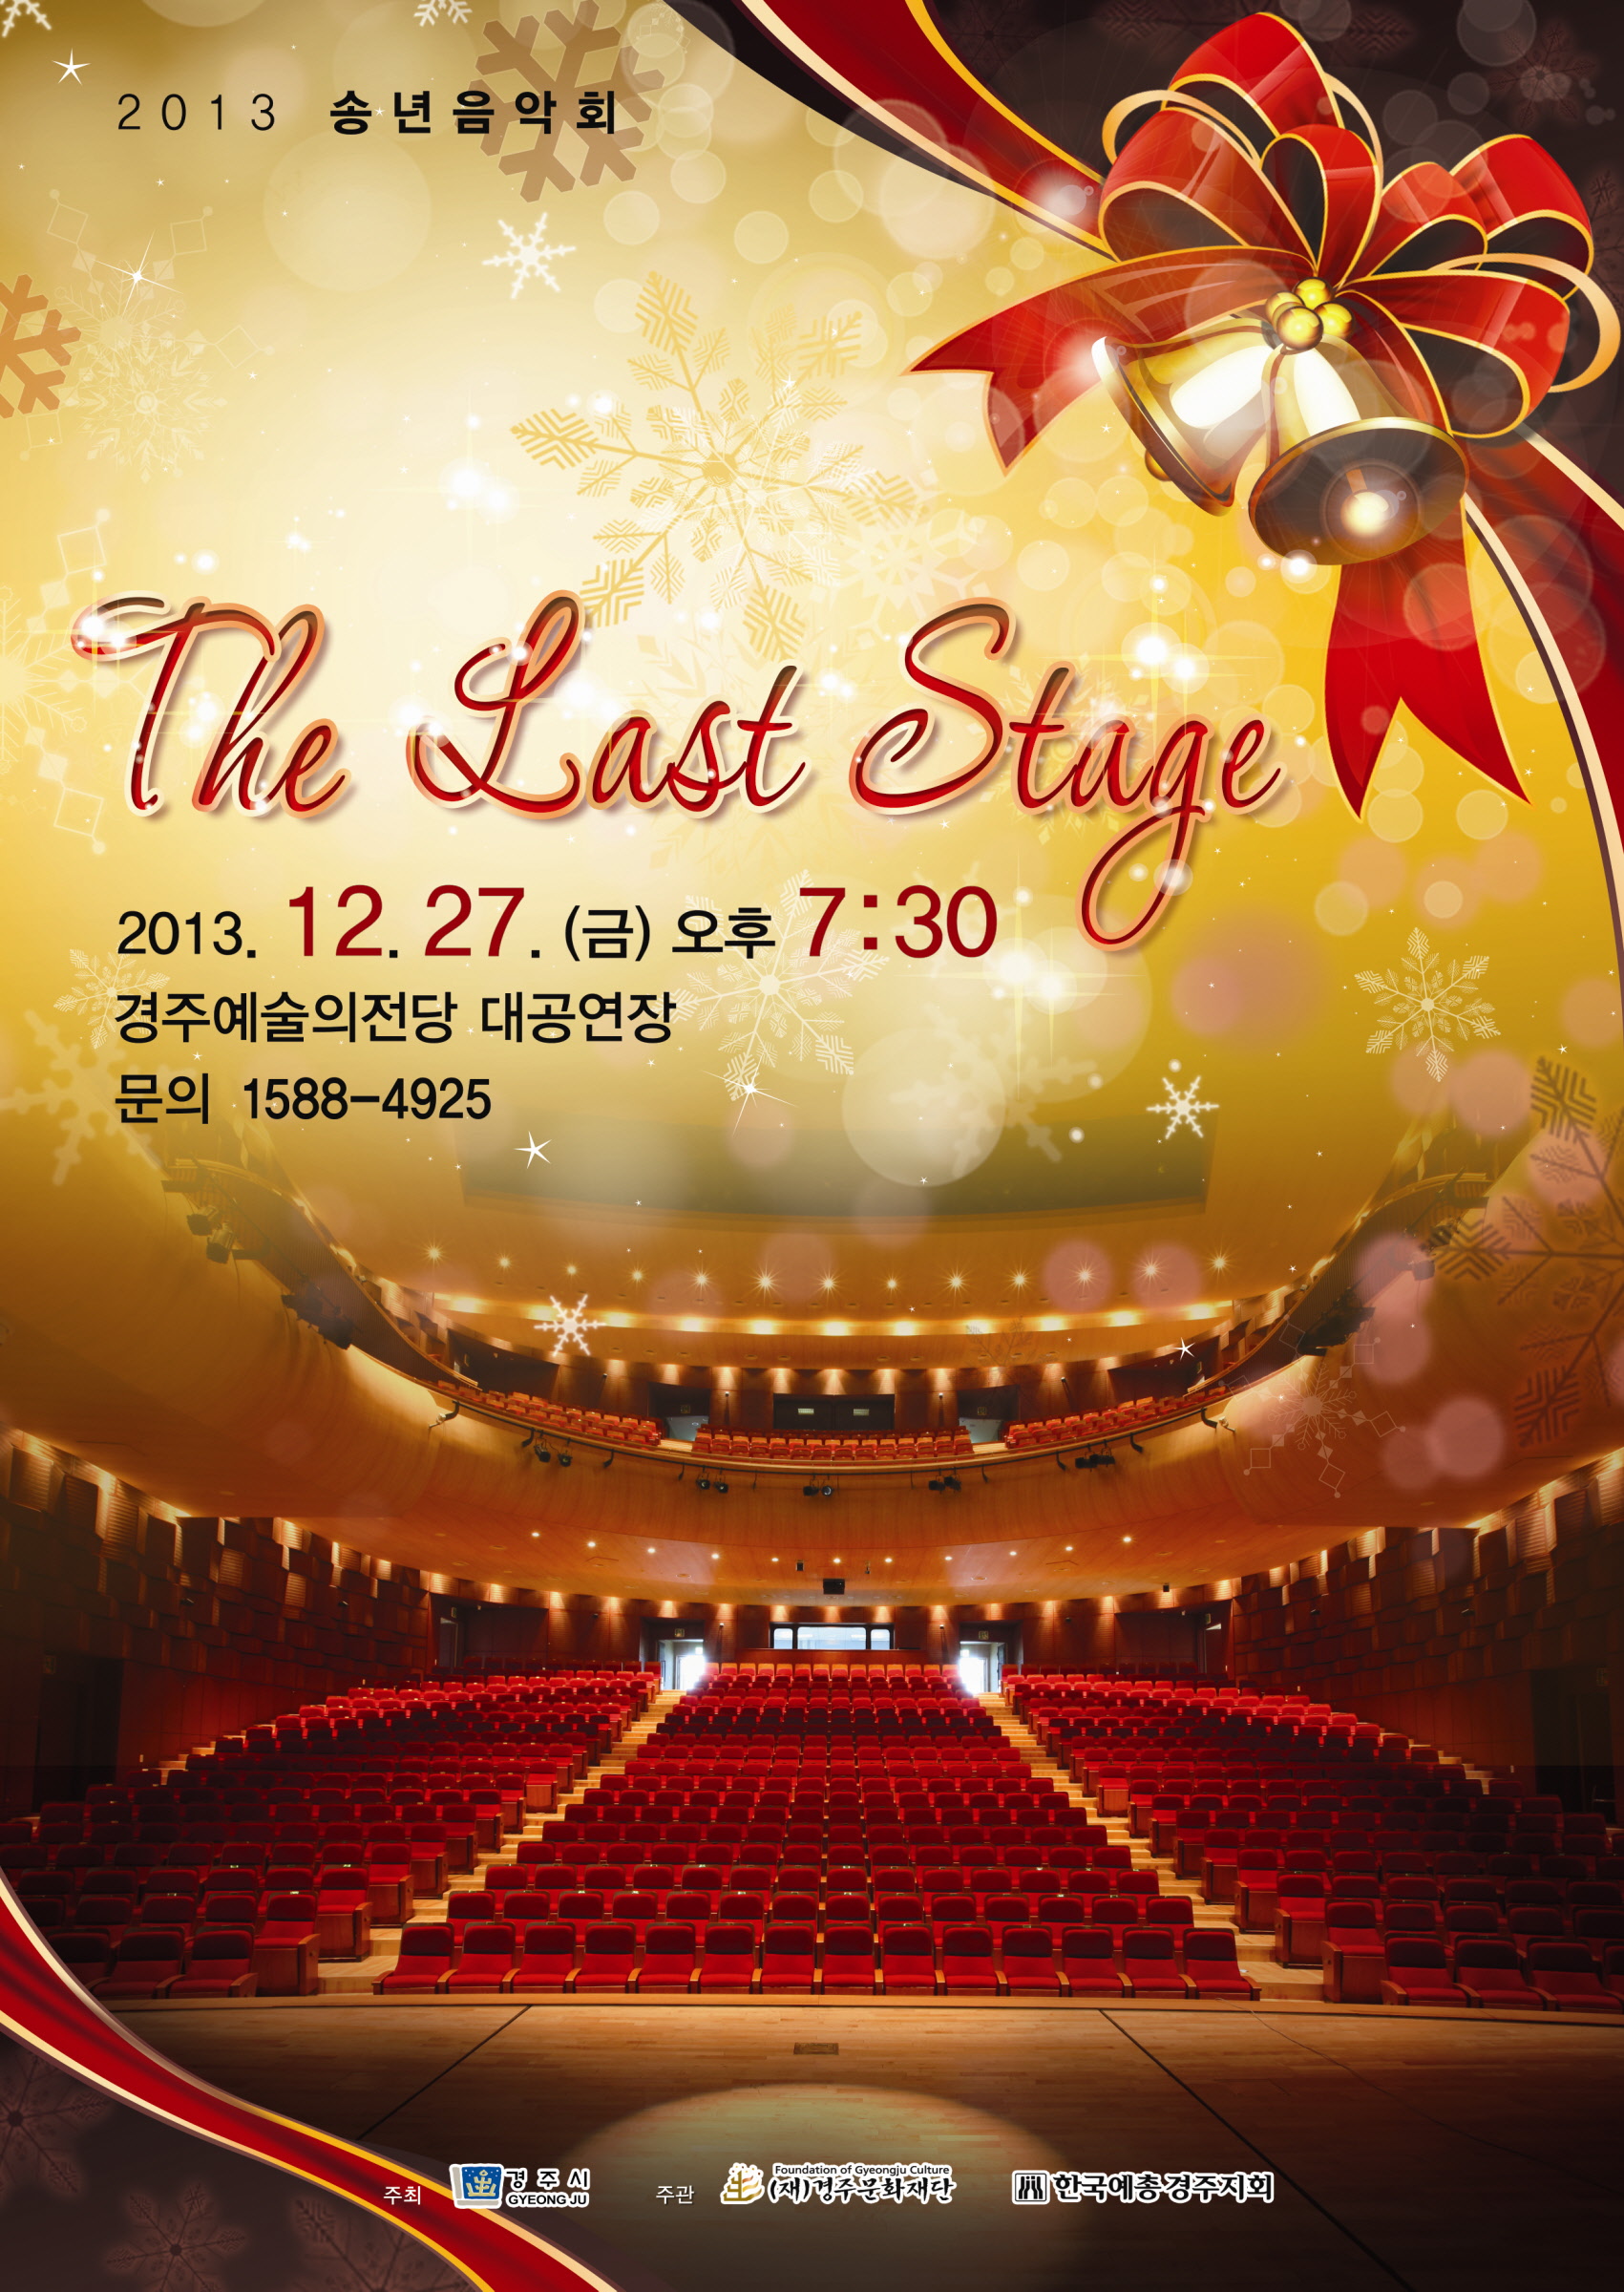 2013년 송년음악회 “The Last Stage”